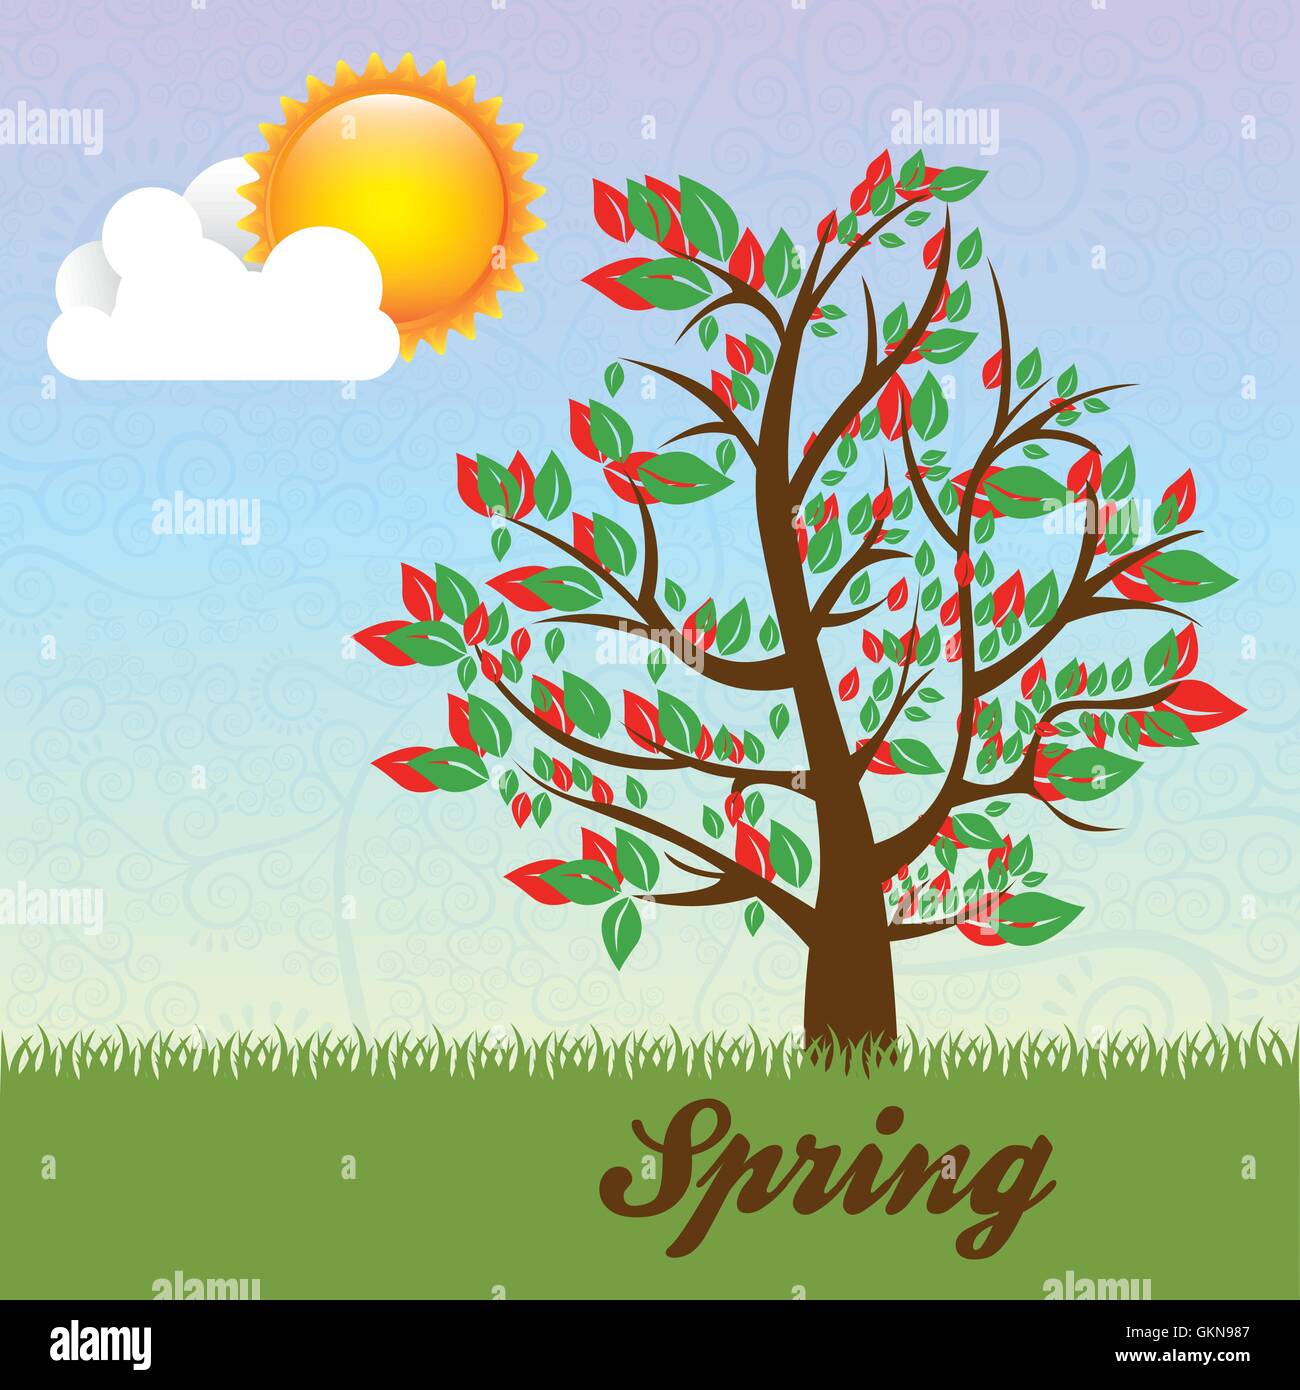 Icônes de la saison avec le soleil et nuages saison arbre vector illustration Illustration de Vecteur